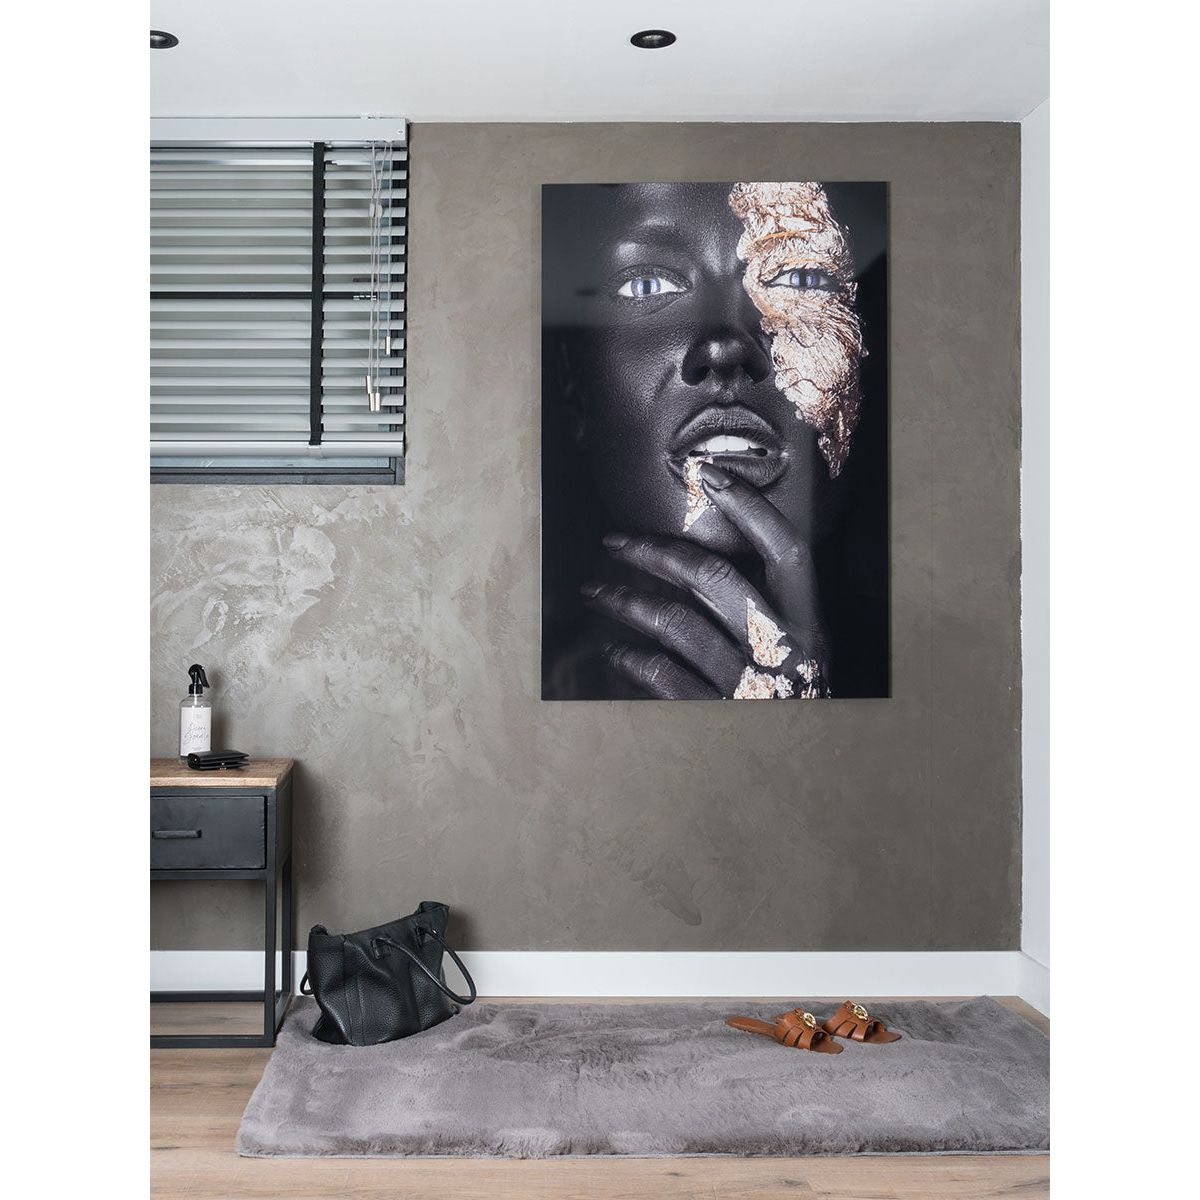 Vloerkleed Gentle Grey 995 - 80 x 300 cm